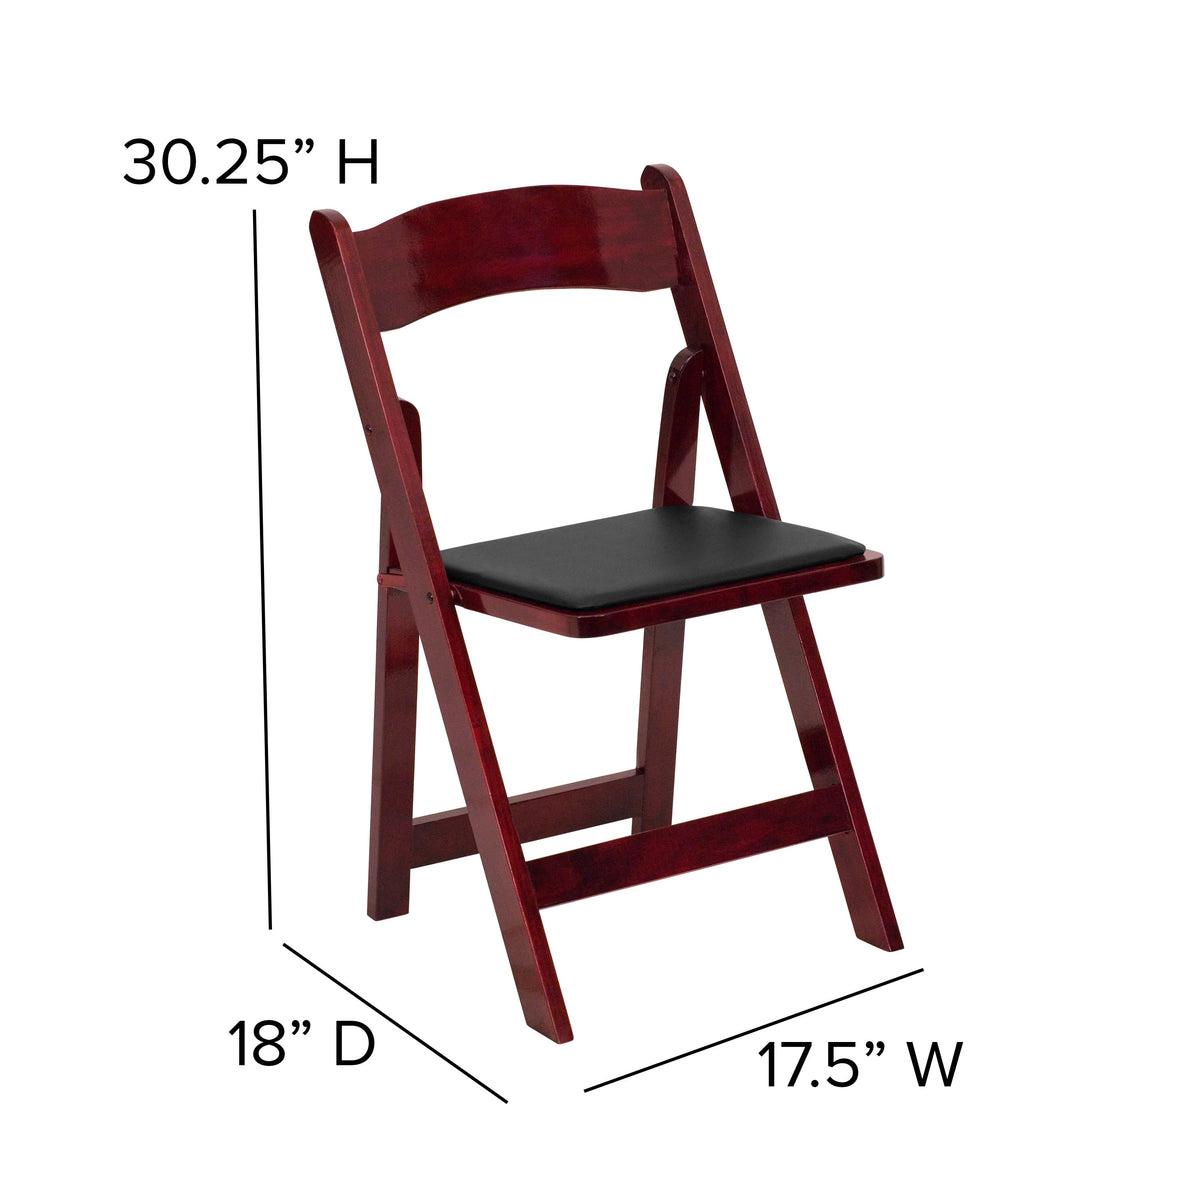 Mahogany |#| Mahogany Wood Folding Chair with Detachable Vinyl Padded Seat